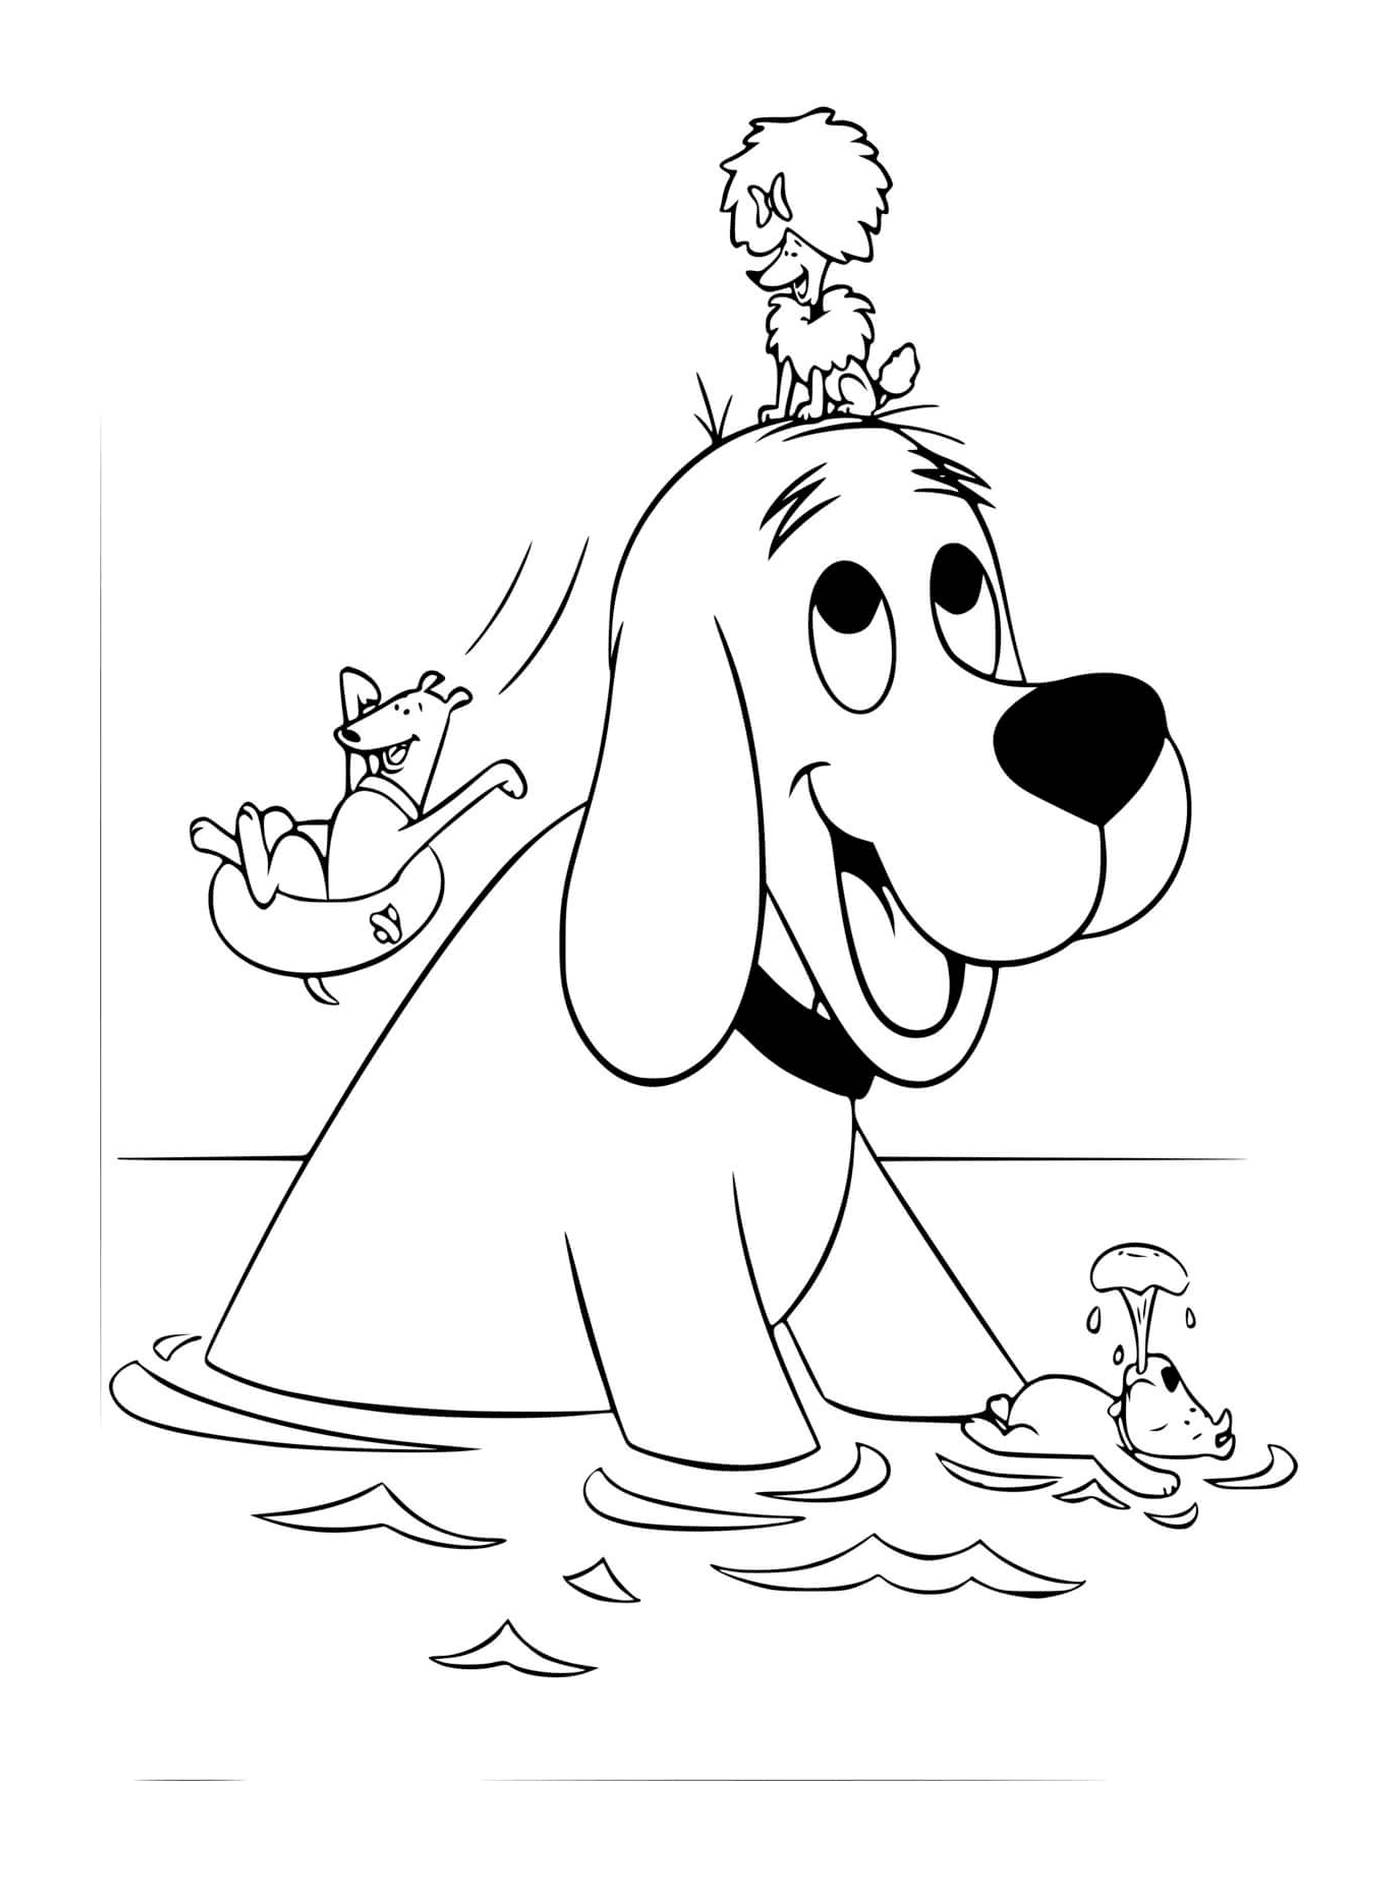  Clifford y sus amigos perros se bañan en el lago 